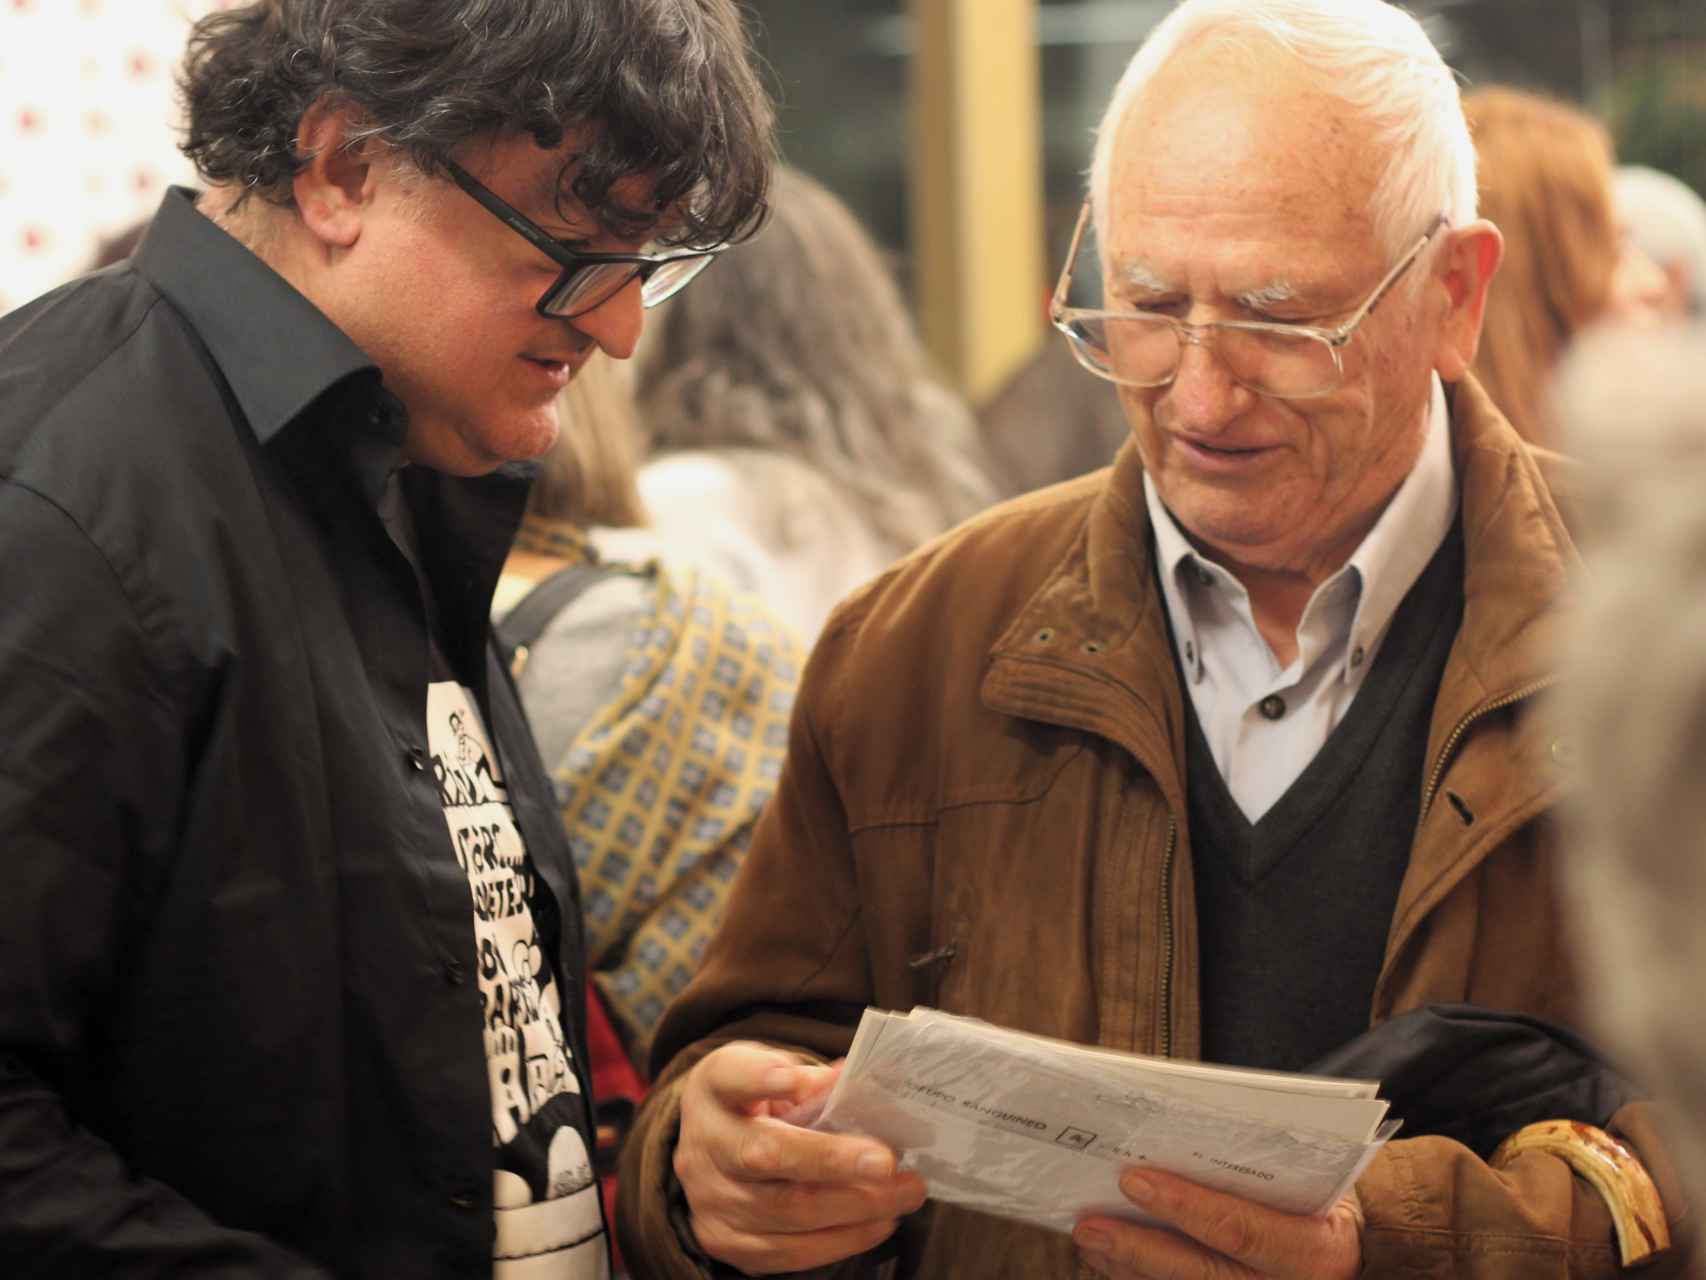 El presidente del Arxiu, Jordi Sánchez, ojea unas fotos con Vicente Martí, antiguo empleado del Instituto Mental de la Santa Creu, durante el aniversario de la entidad